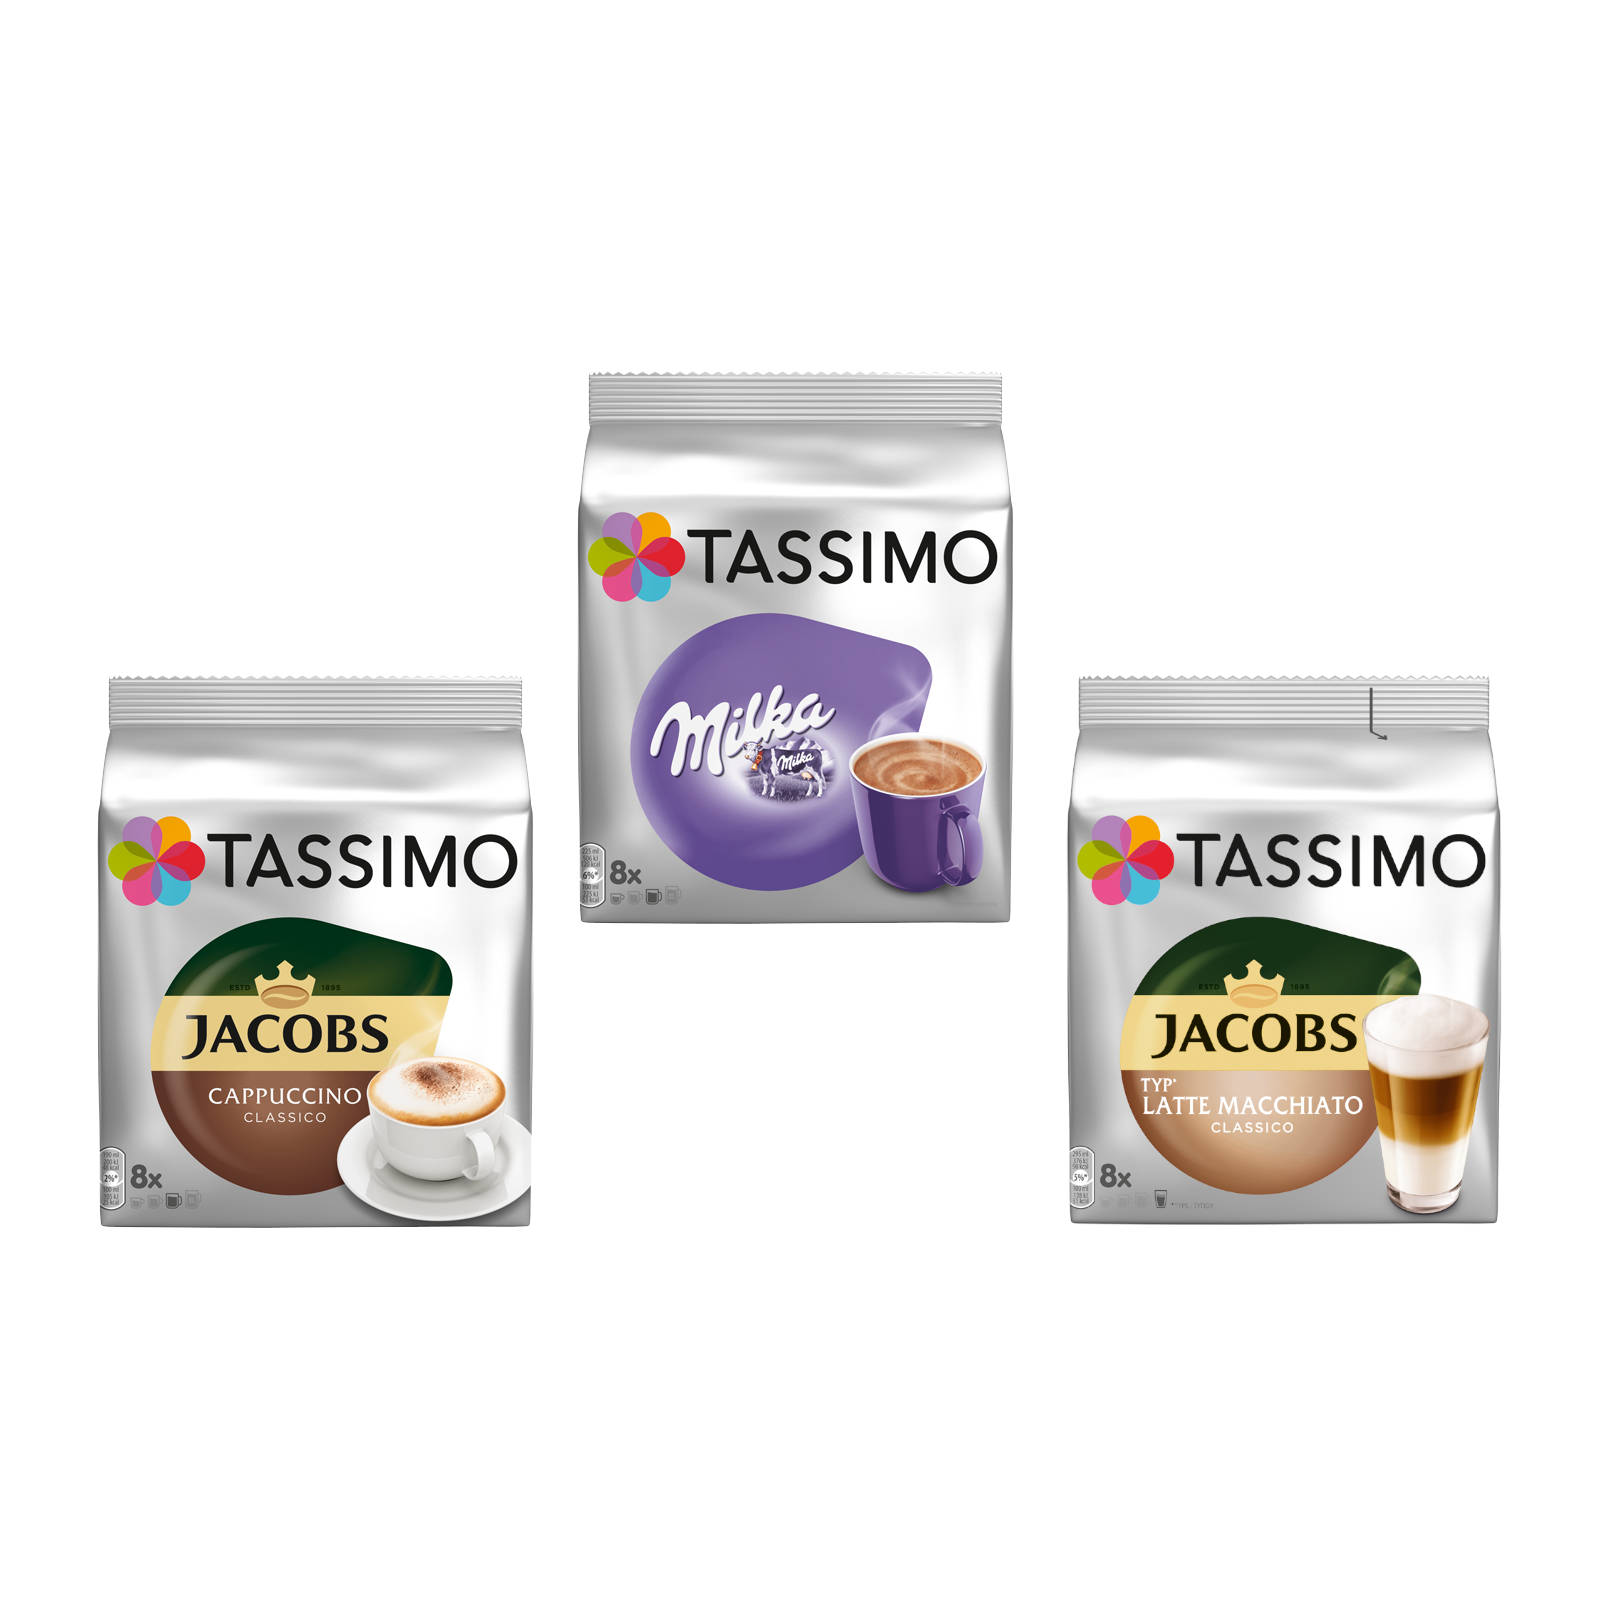 TASSIMO Creamy Latte Kaffeekapseln Macchiato Collection Maschine Cappuccino Classico (T-Disc System)) (Tassimo Milka